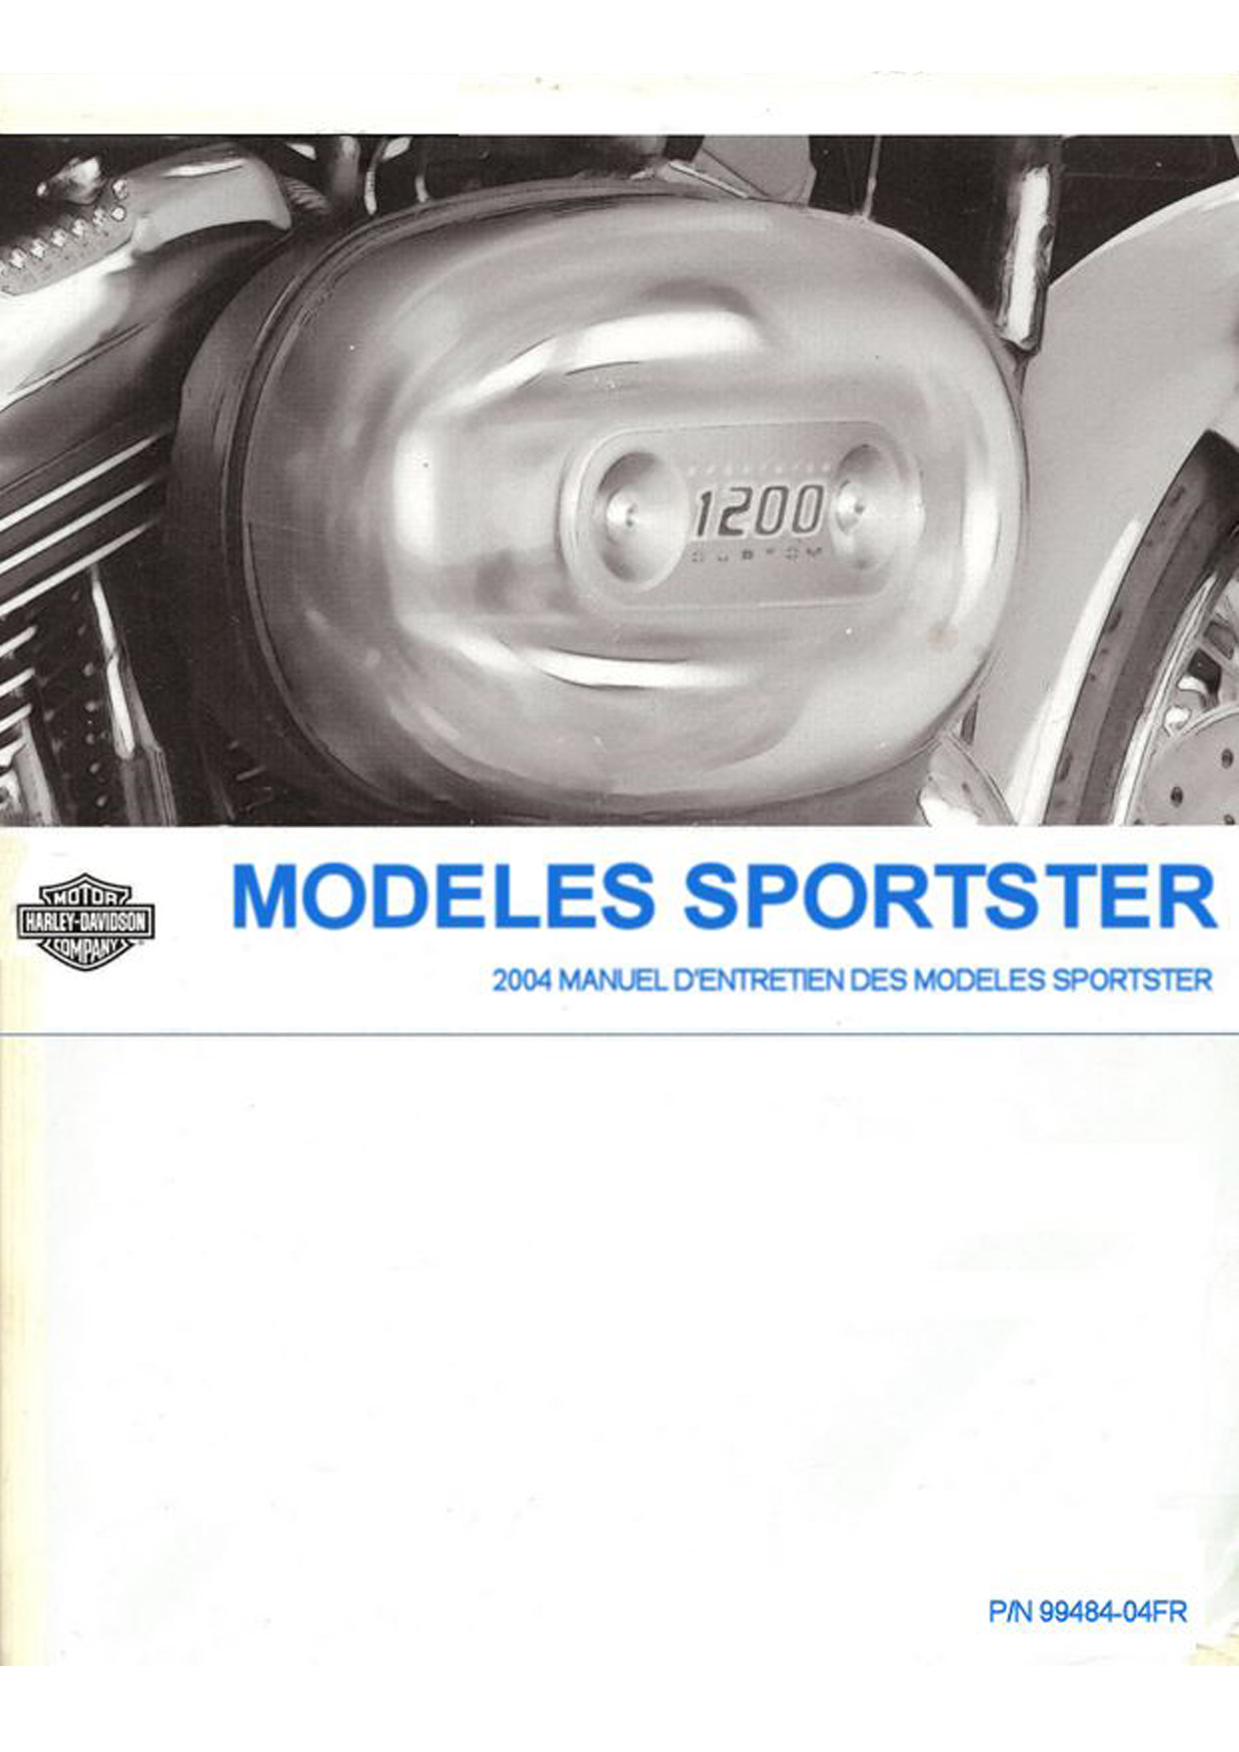 2004 Sportster Models Parts Catalog